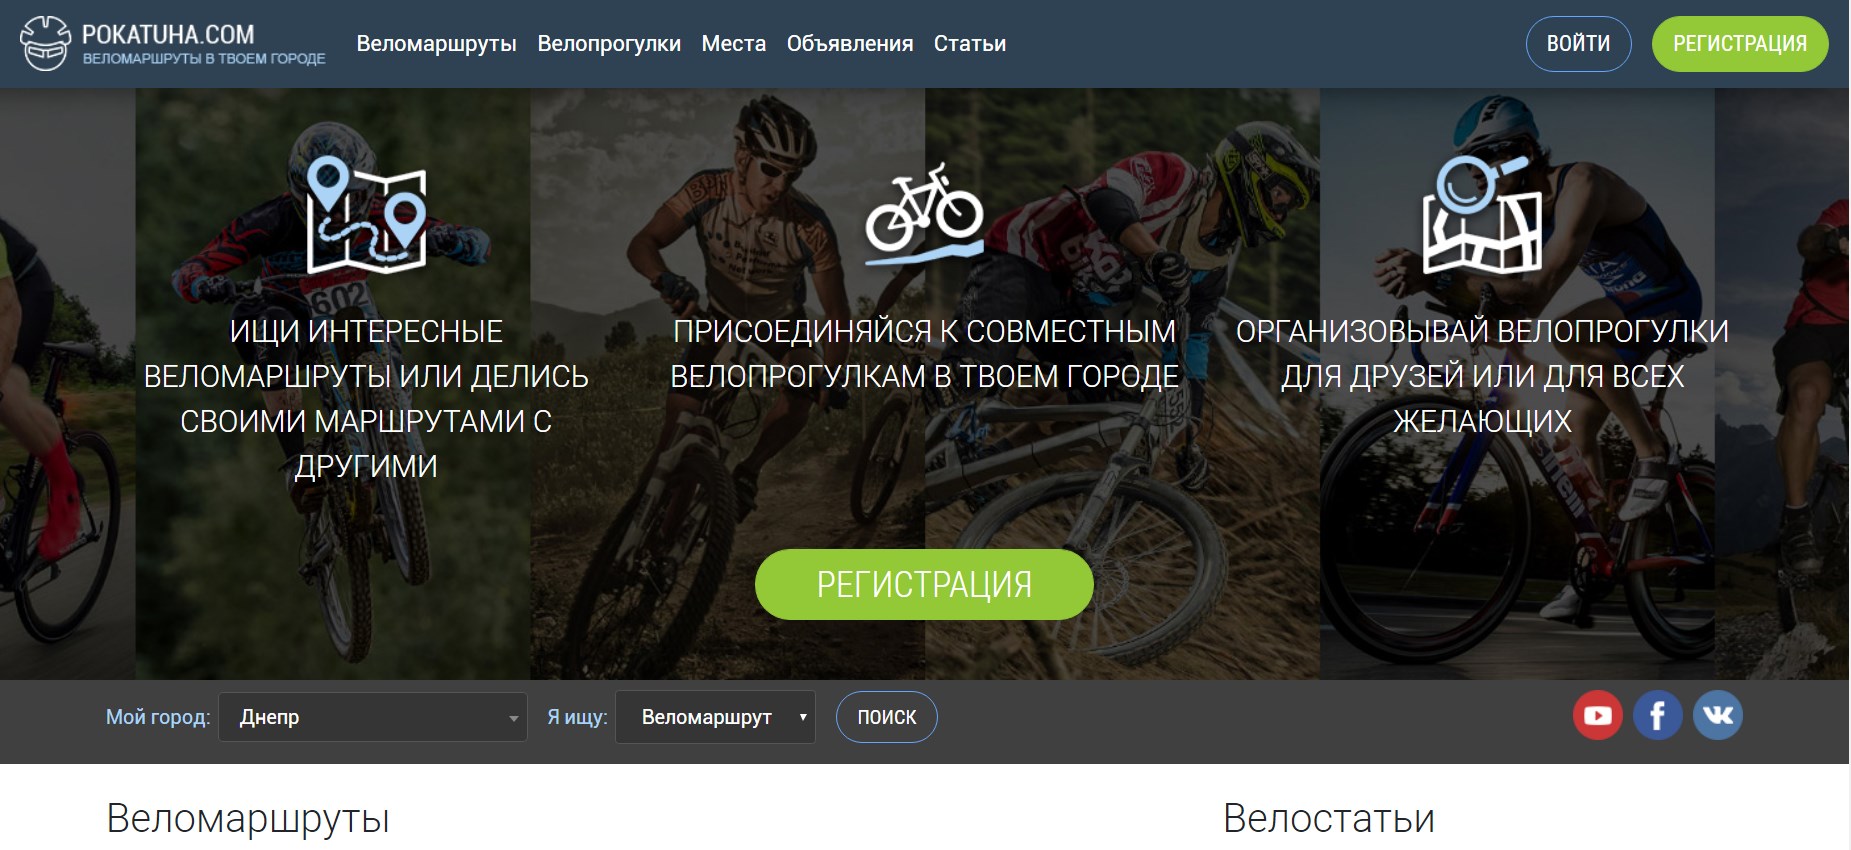 Веломаршруты Днепра: ТОП сервисов с готовыми маршрутами для велосипедистов. Новости Днепра